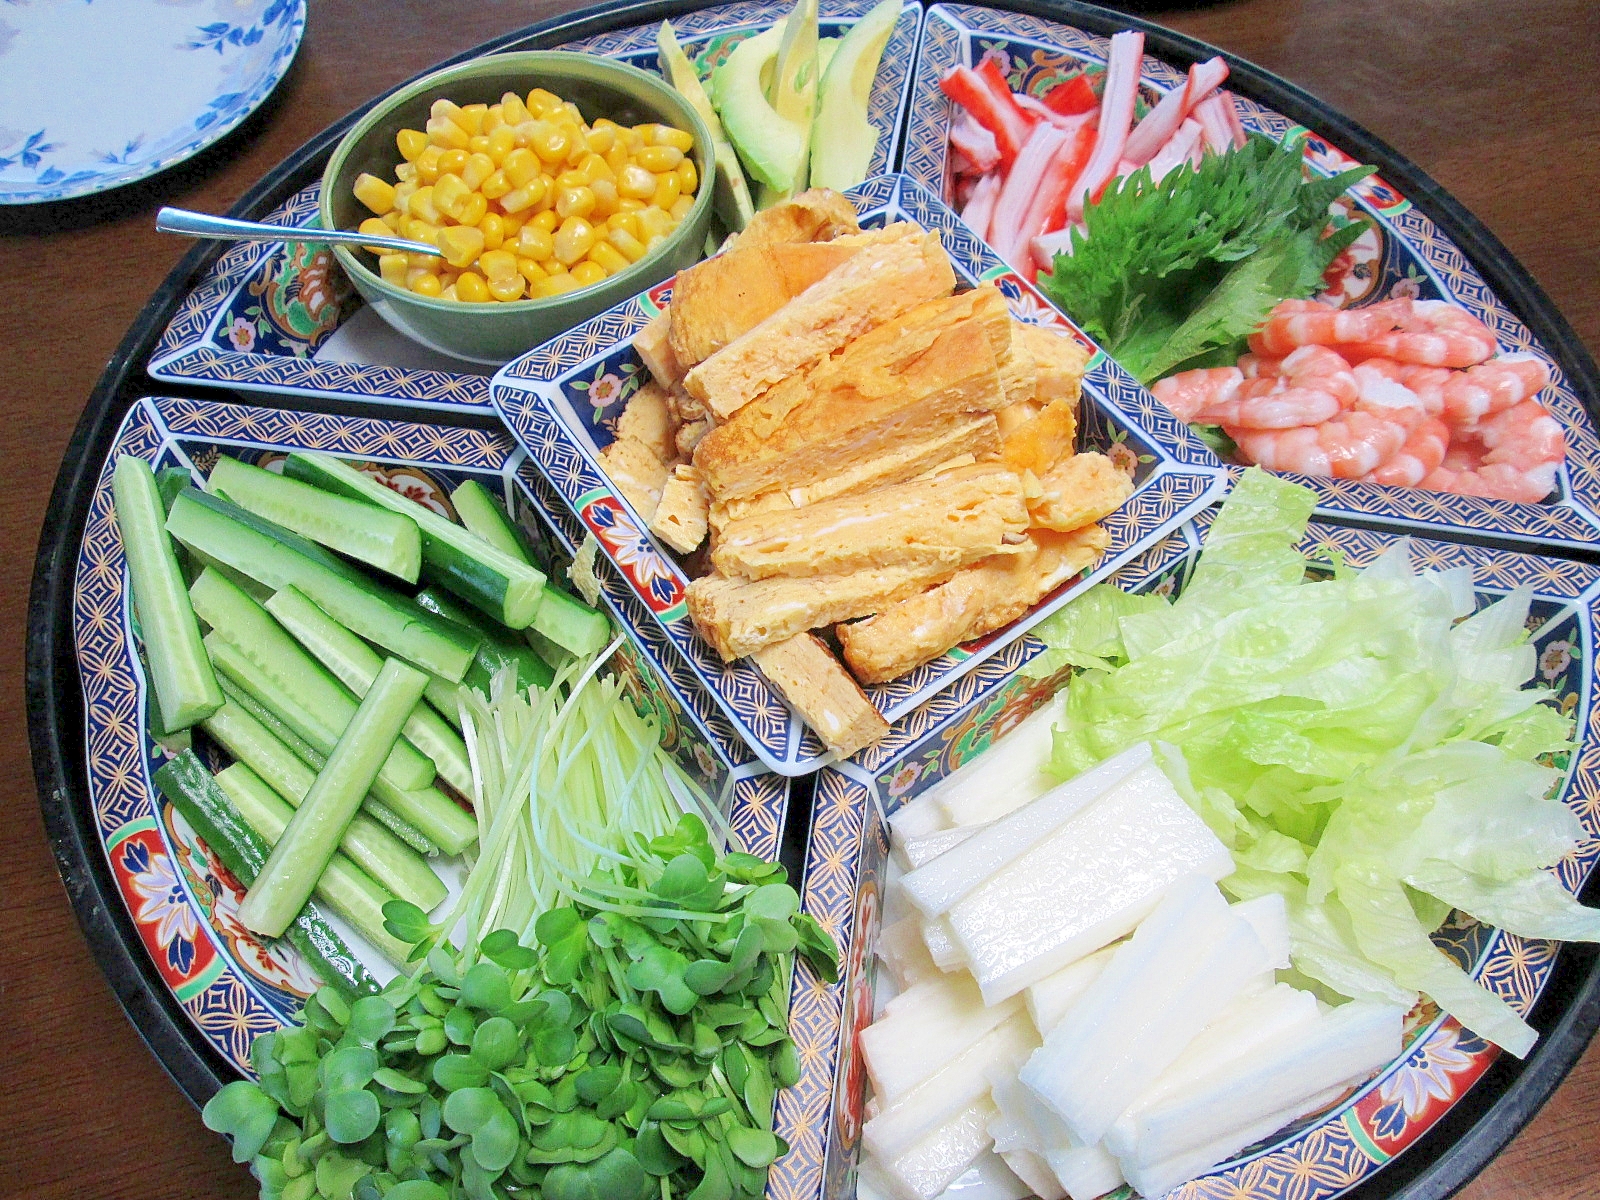 野菜タップリの手巻き寿司